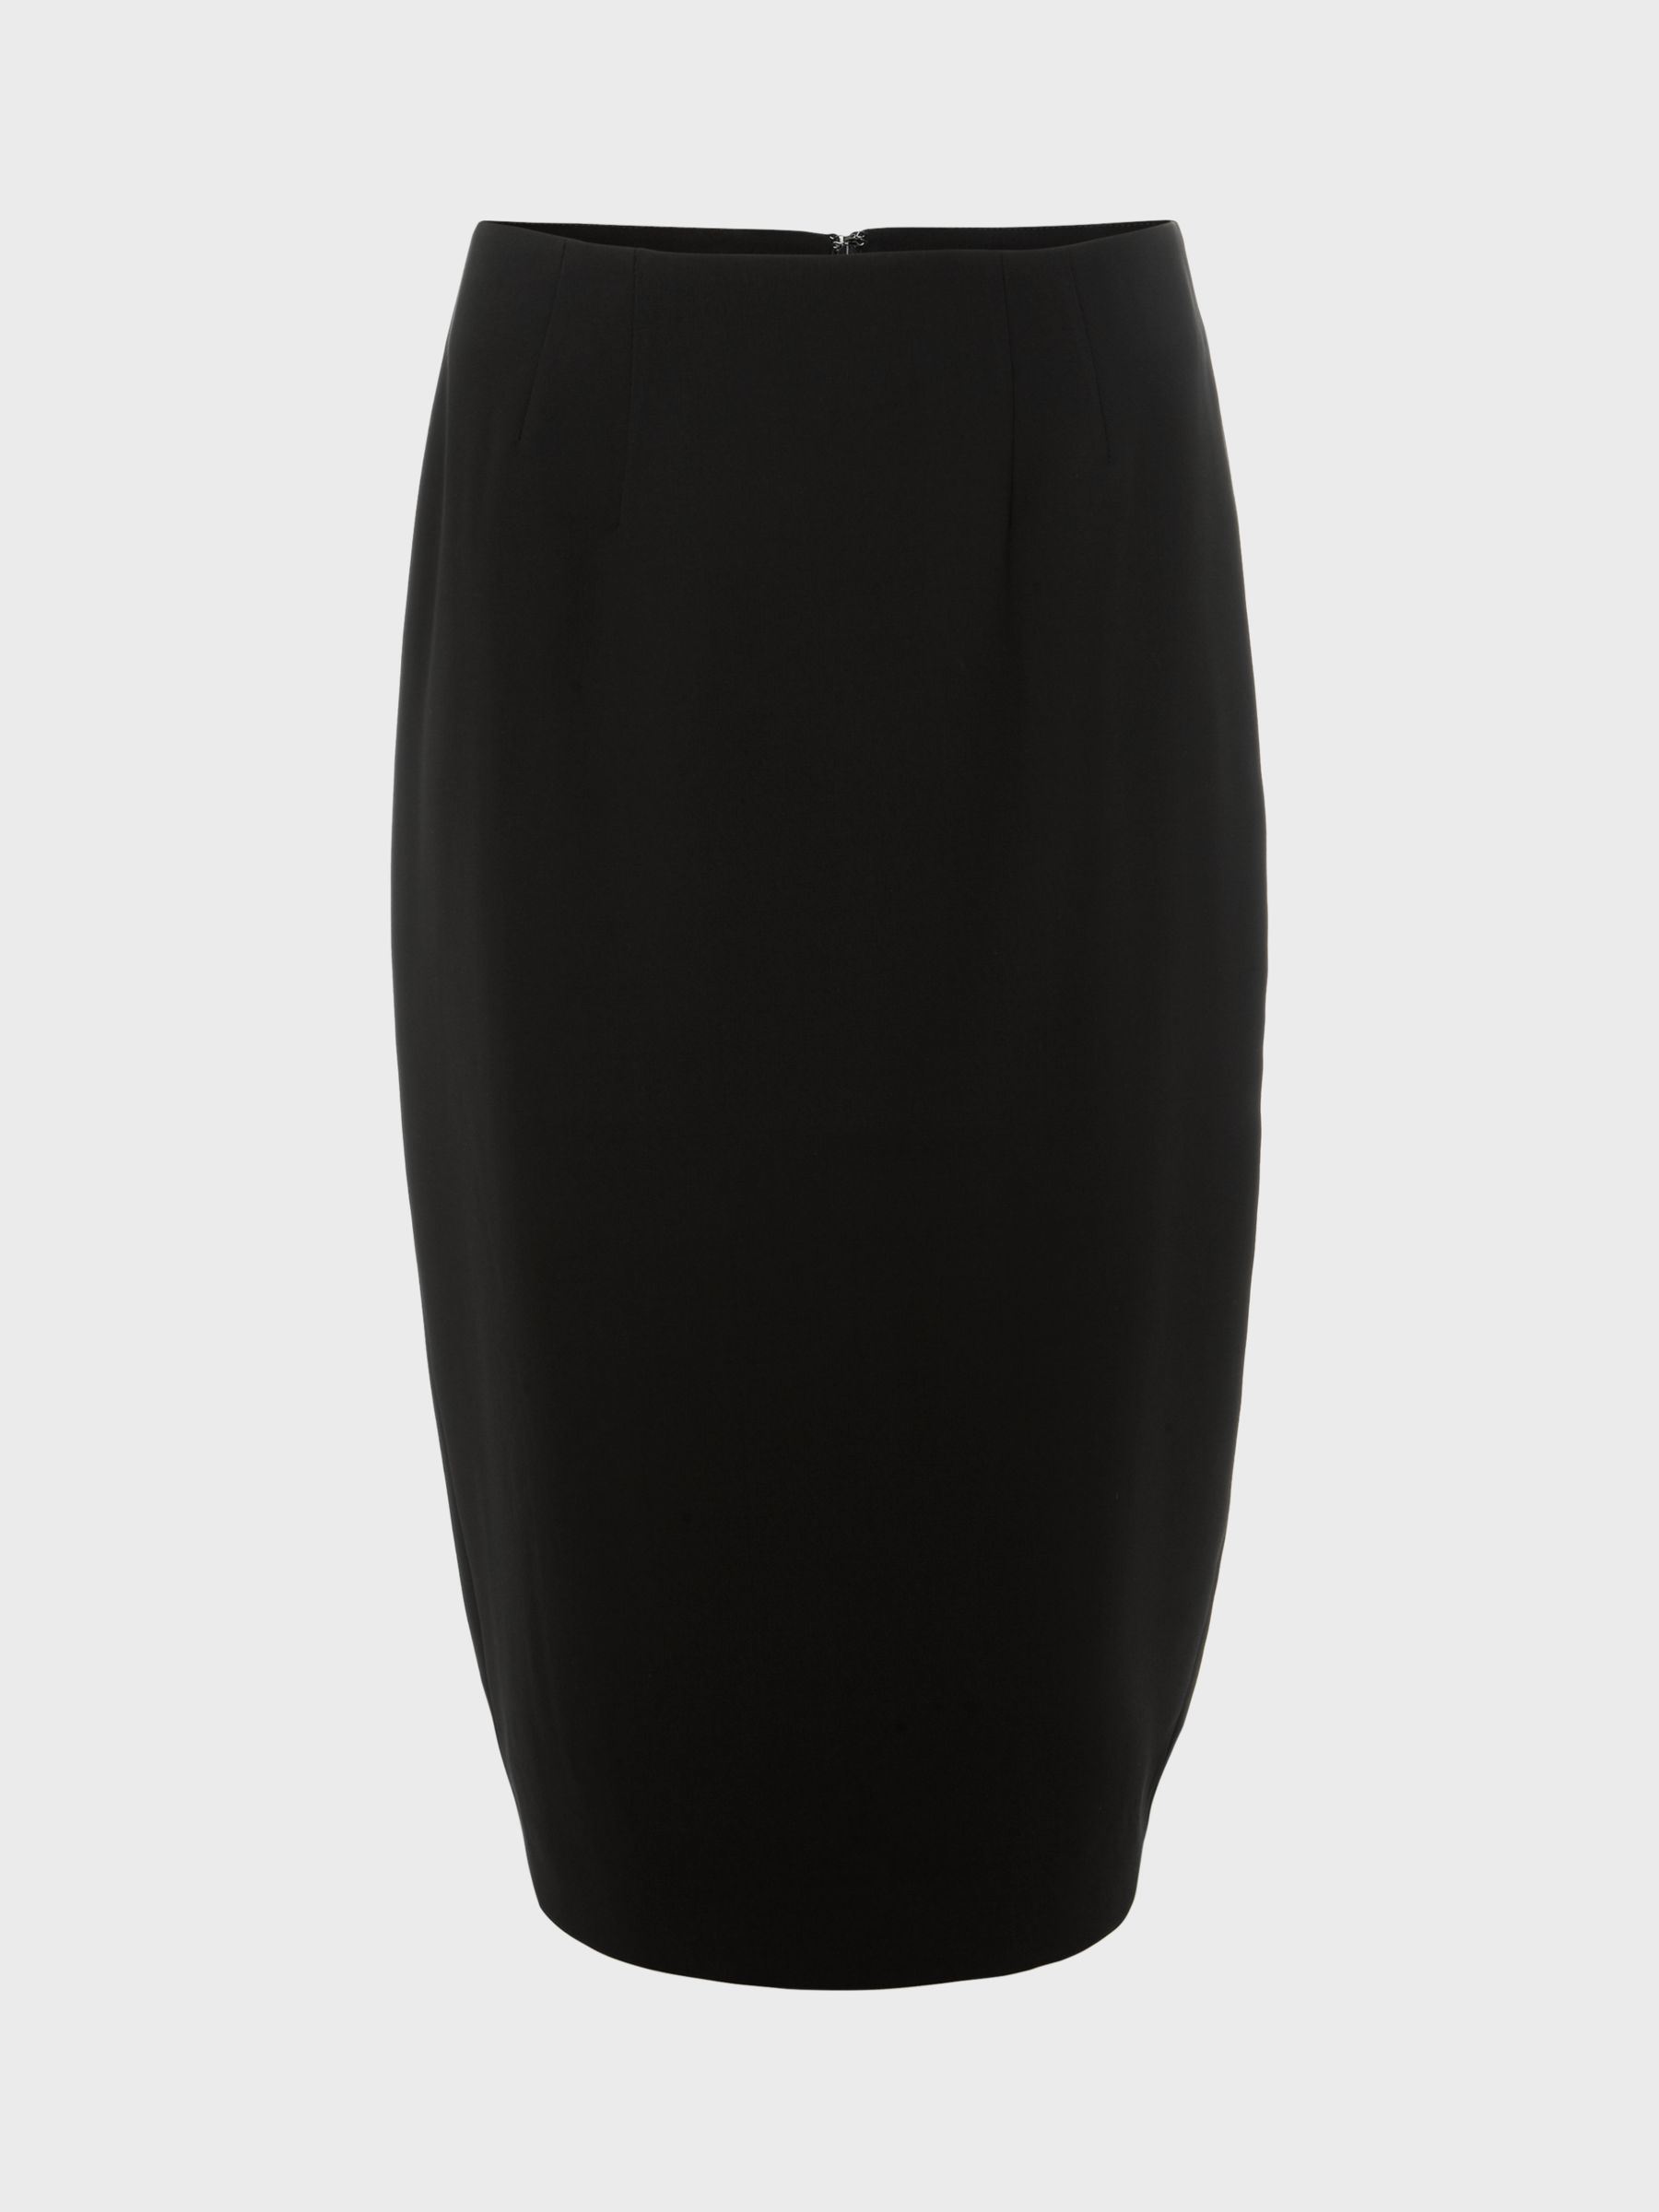 Hobbs Mel Pencil Knee Length Skirt, Black, 6